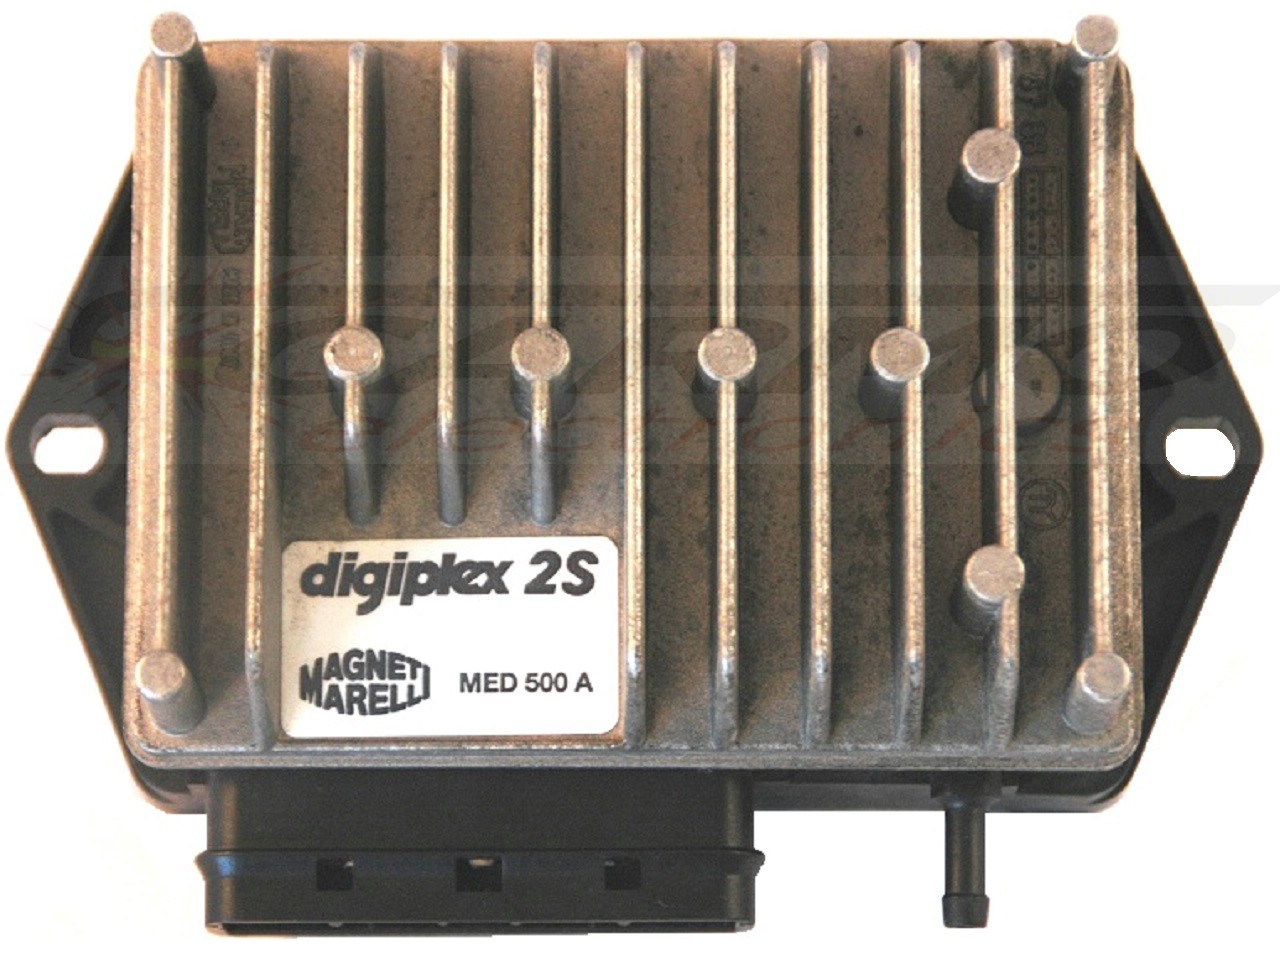 Ducati Moto Guzzi Digiplex 2S ignição acendedor unidade CDI TCI Box MED441A, MED442A, MED446A, MED500A, MED501A, MED902A - Clique na Imagem para Fechar